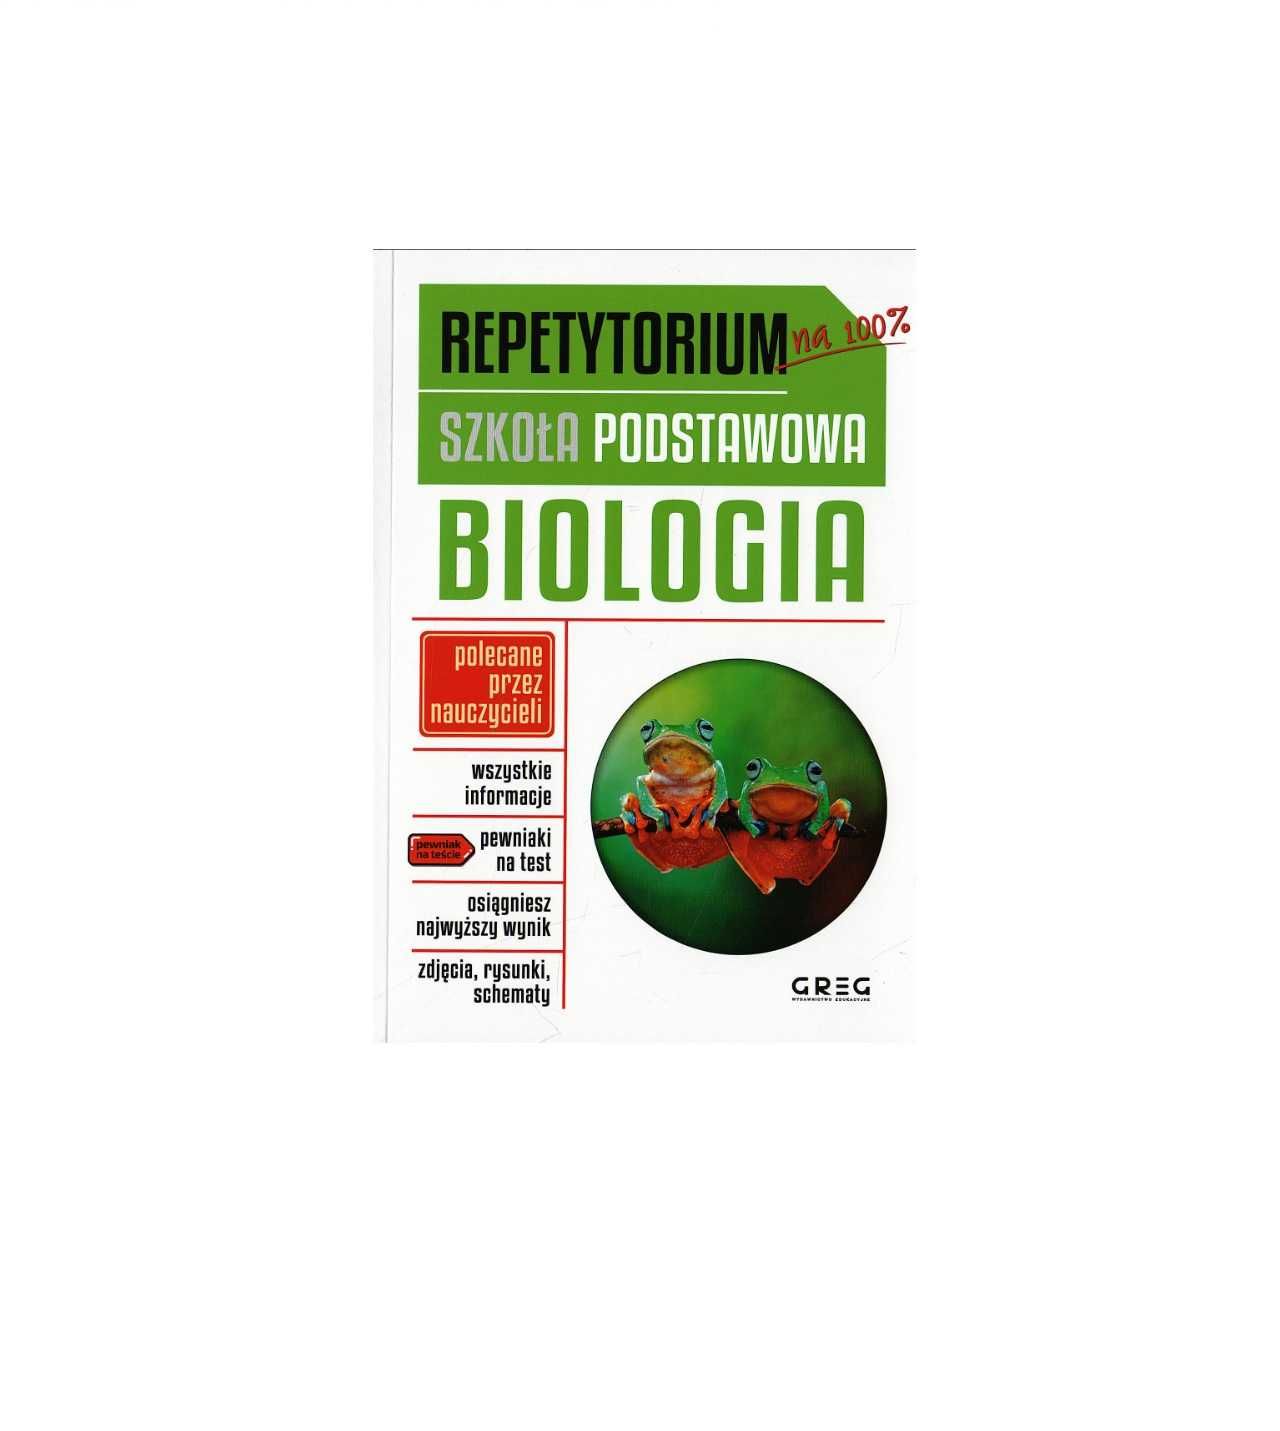 Biologia na 100% - Repetytorium - szkoła podstawowa - GREG